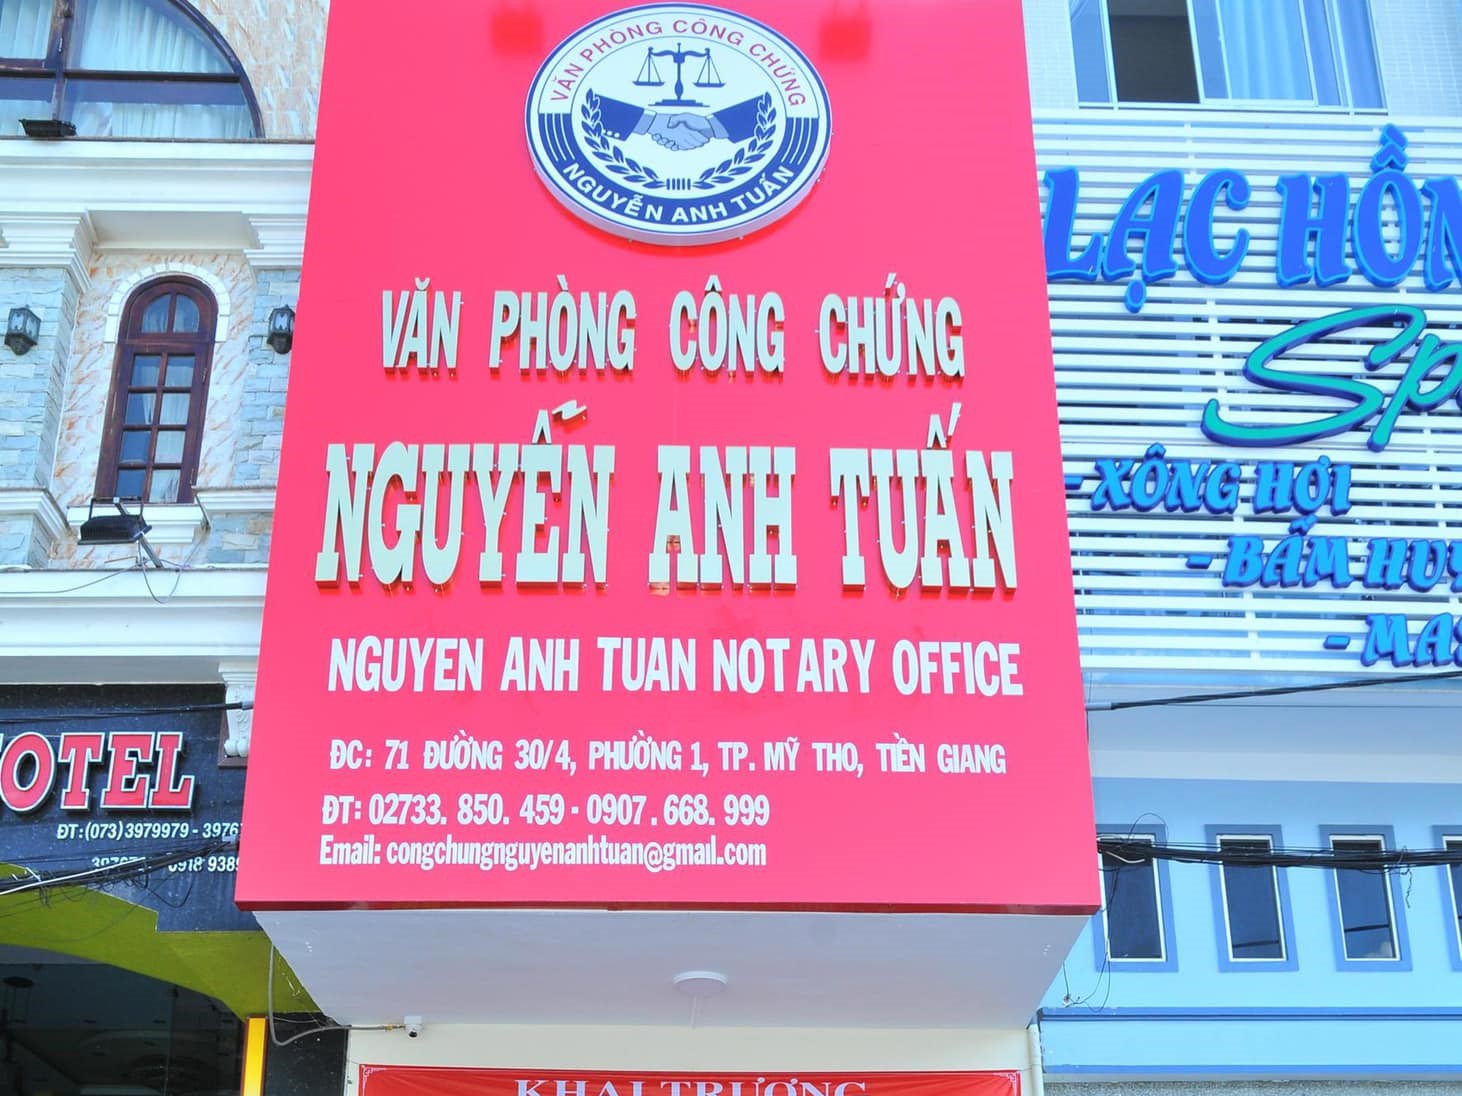 Liên hệ Văn phòng công chứng Nguyễn Anh Tuấn Tiền Giang thông tin địa chỉ số điện thoại